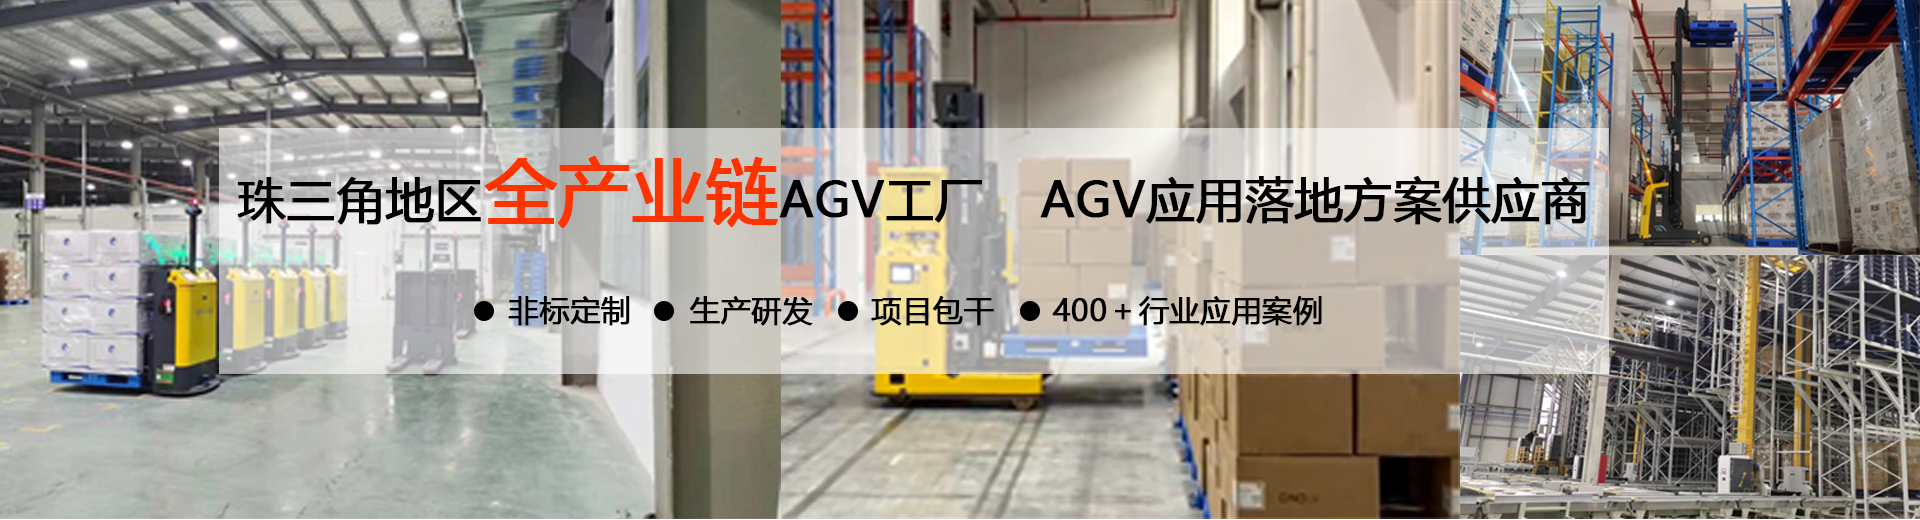 非标定制AGV小车设备工厂